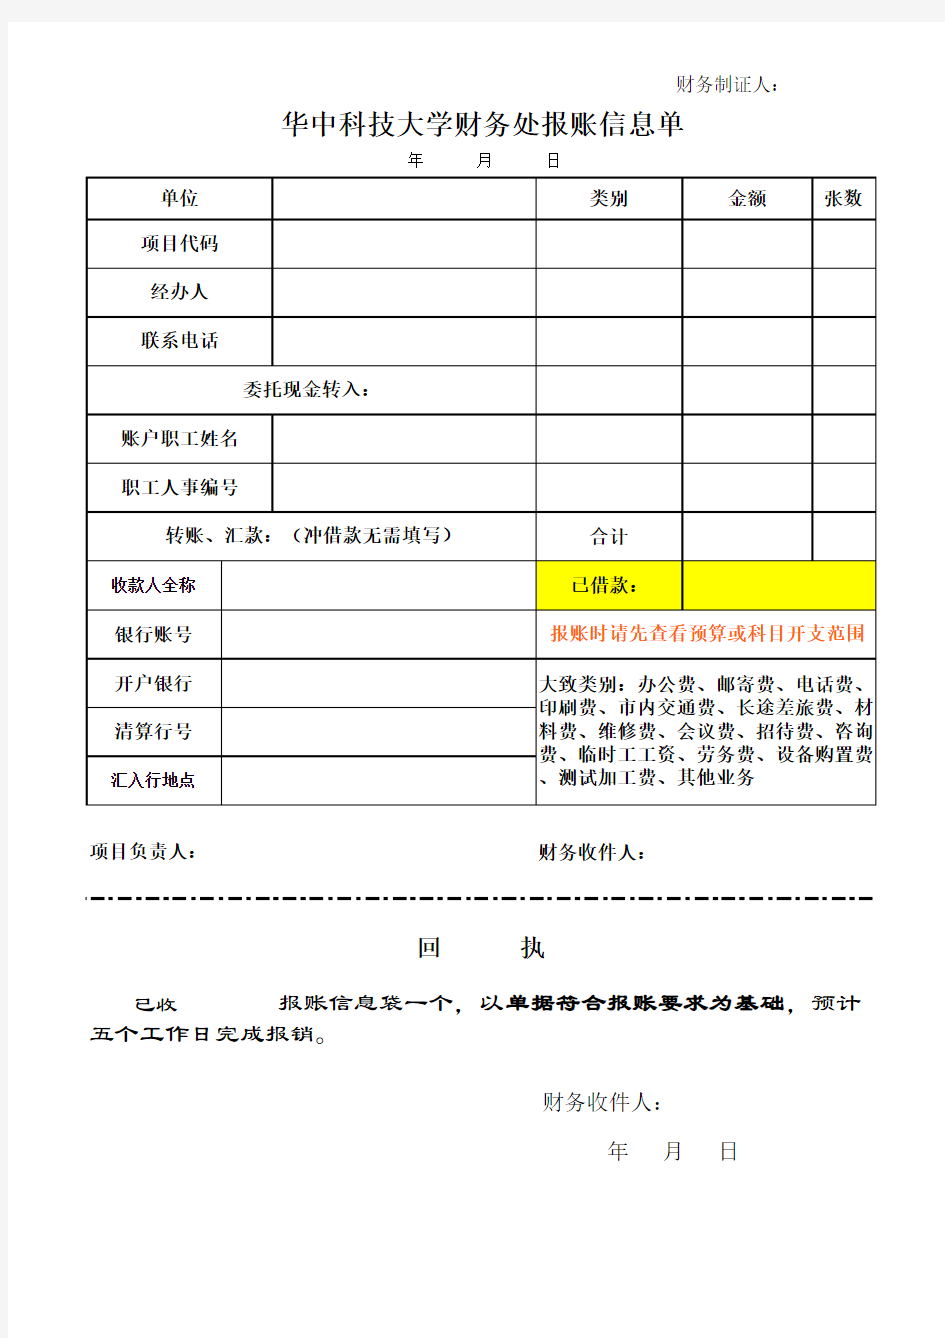 华中科技大学财务处报账信息单